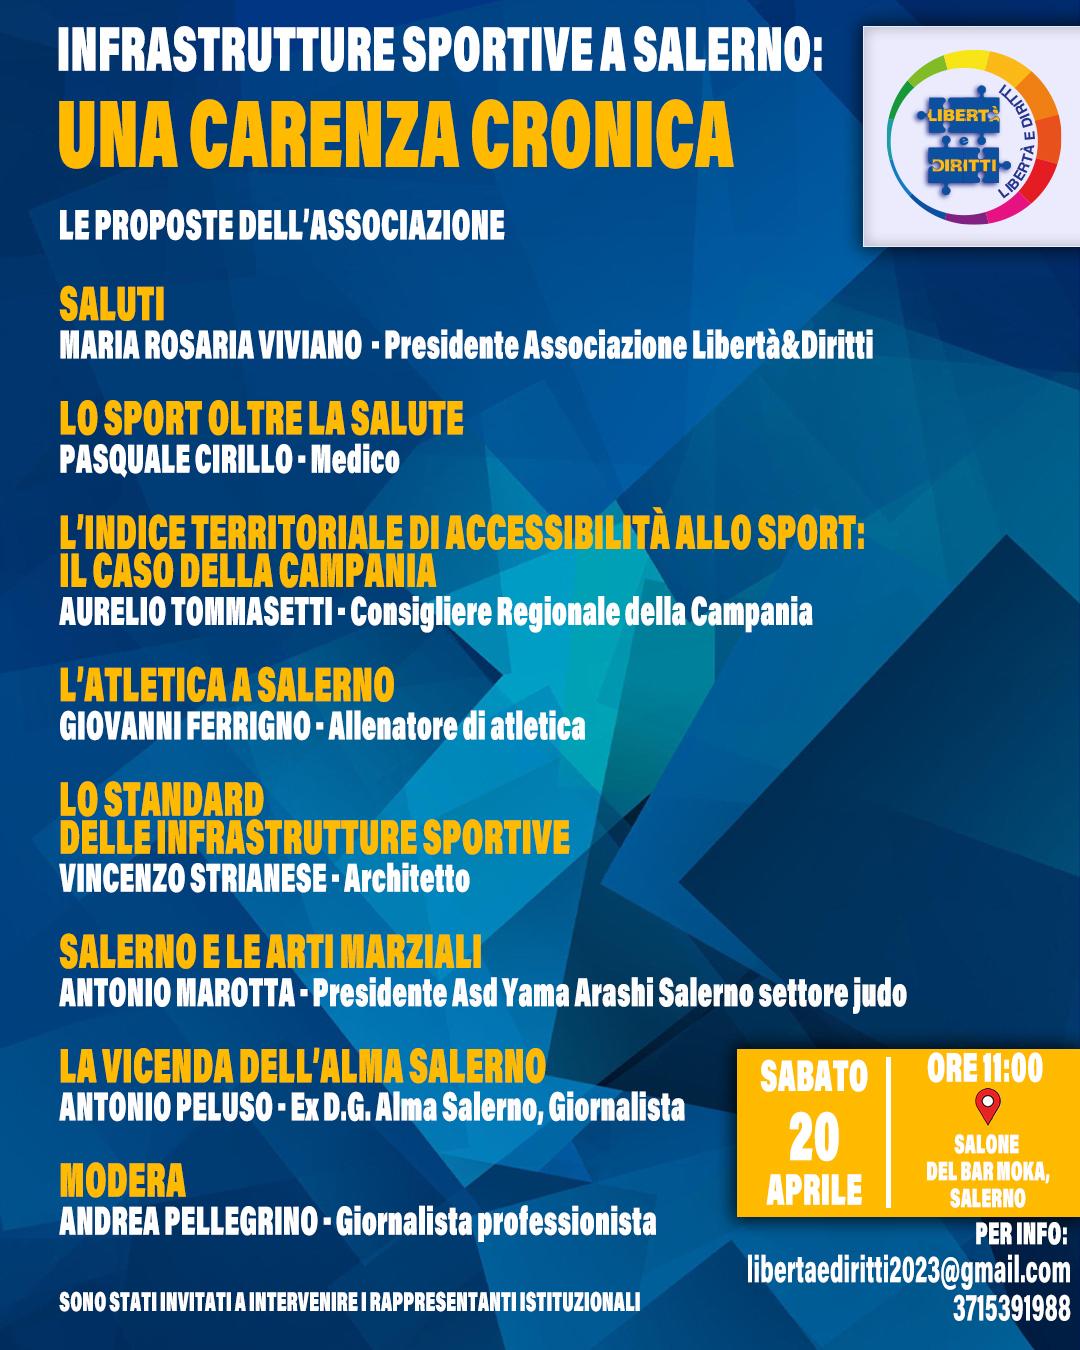 Salerno: infrastrutture sportive, consigliere regionale Tommasetti ad incontro di “Libertà e diritti”